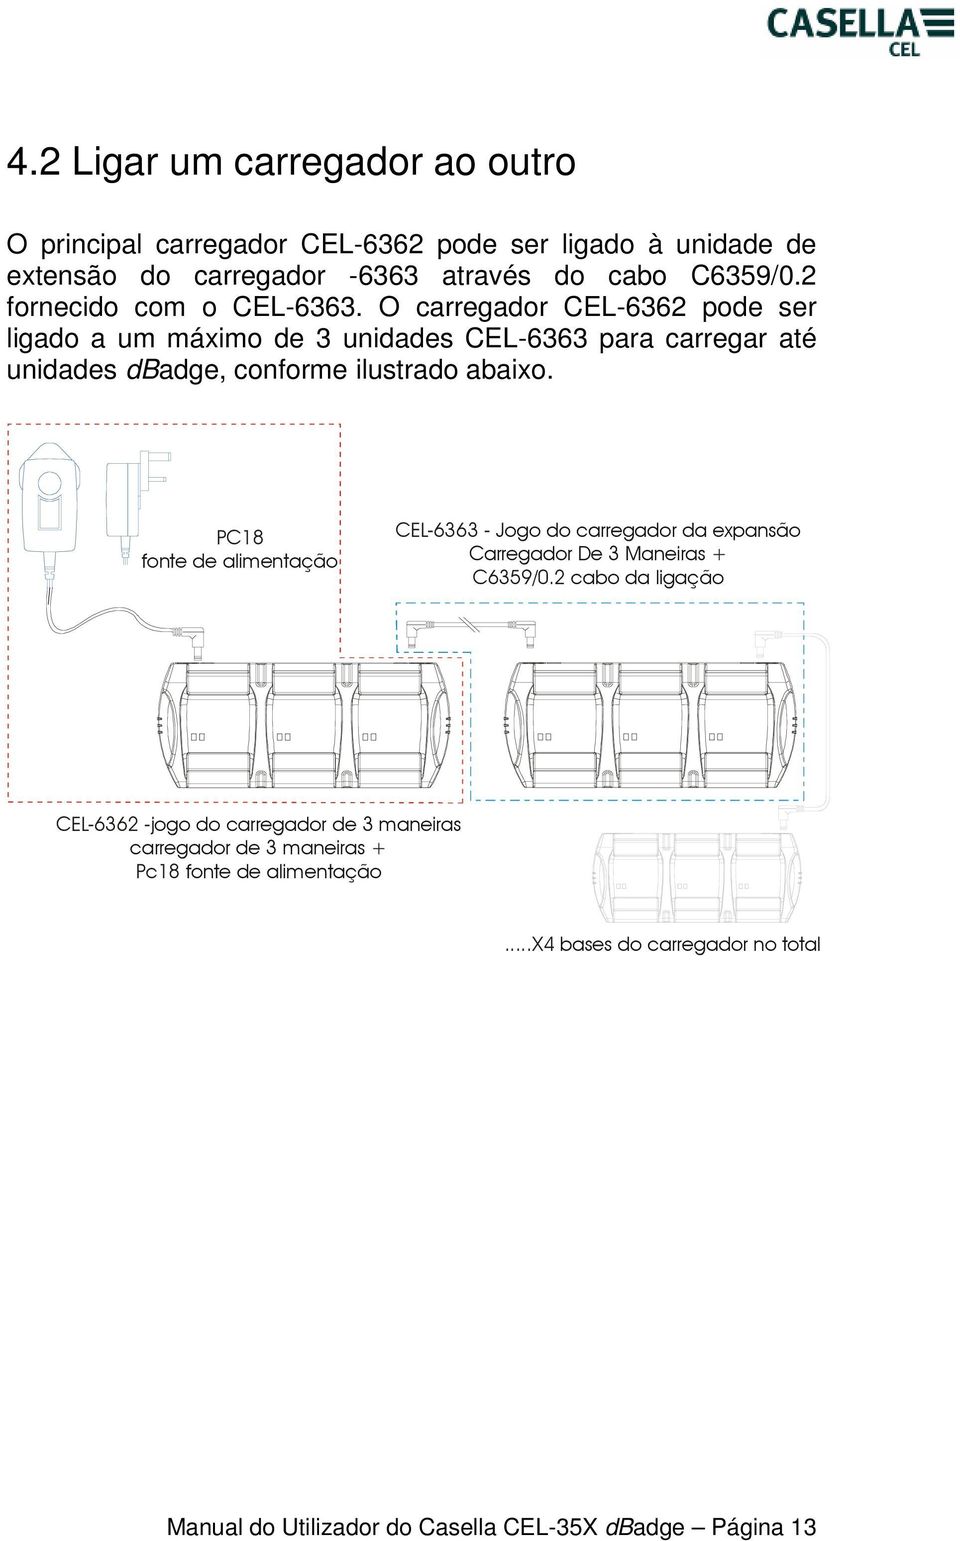 O carregador CEL-6362 pode ser ligado a um máximo de 3 unidades CEL-6363 para carregar até unidades dbadge, conforme ilustrado abaixo.